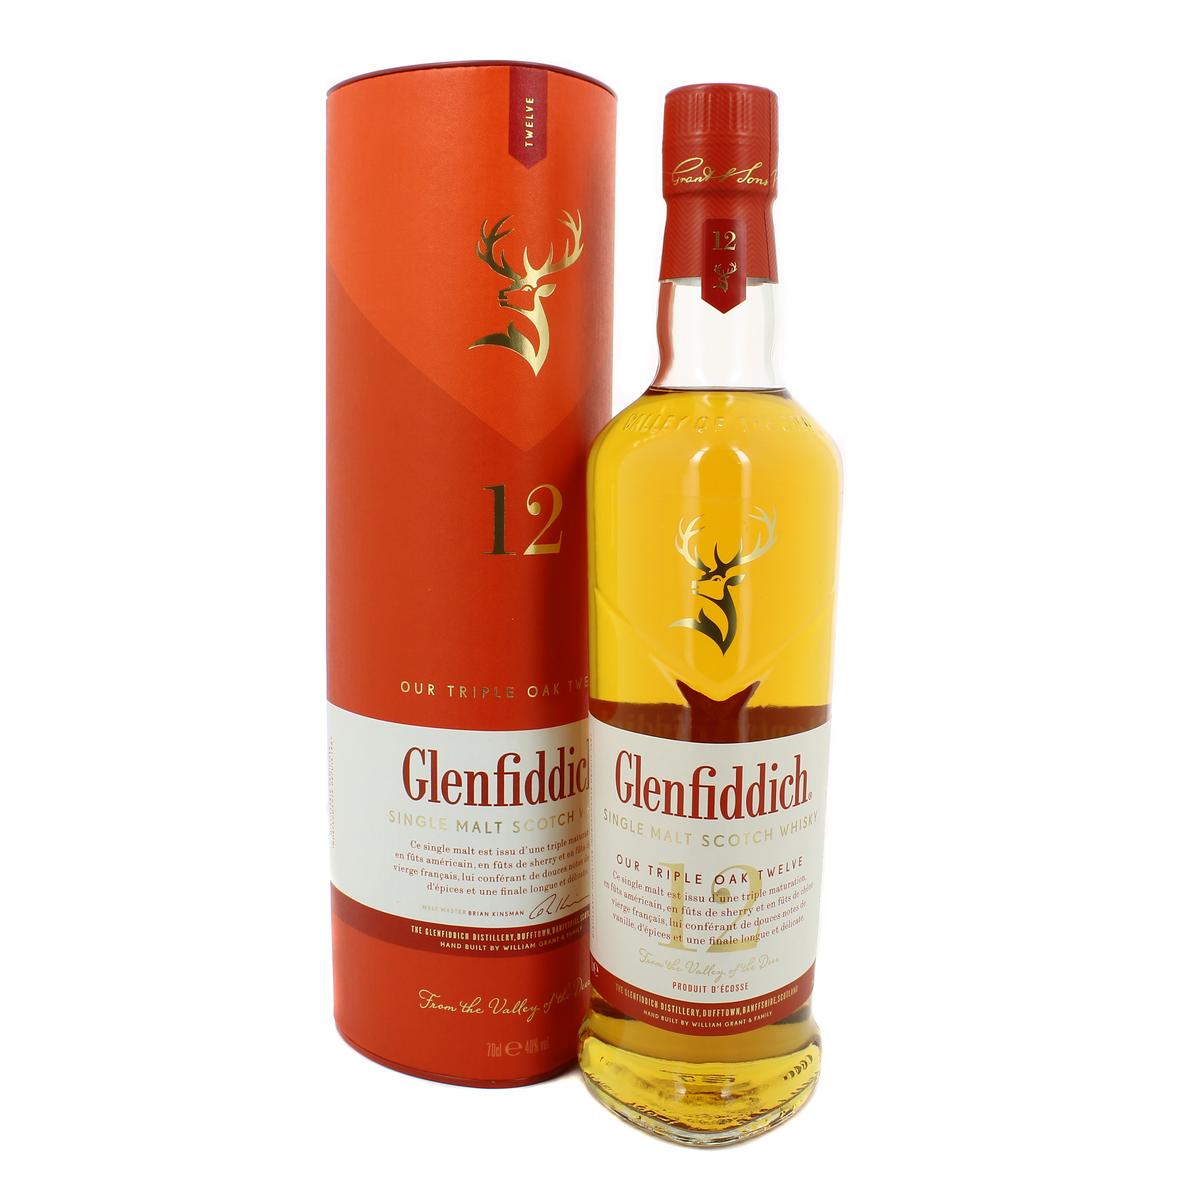 Whisky Glenfiddich 40 Ans au meilleur prix